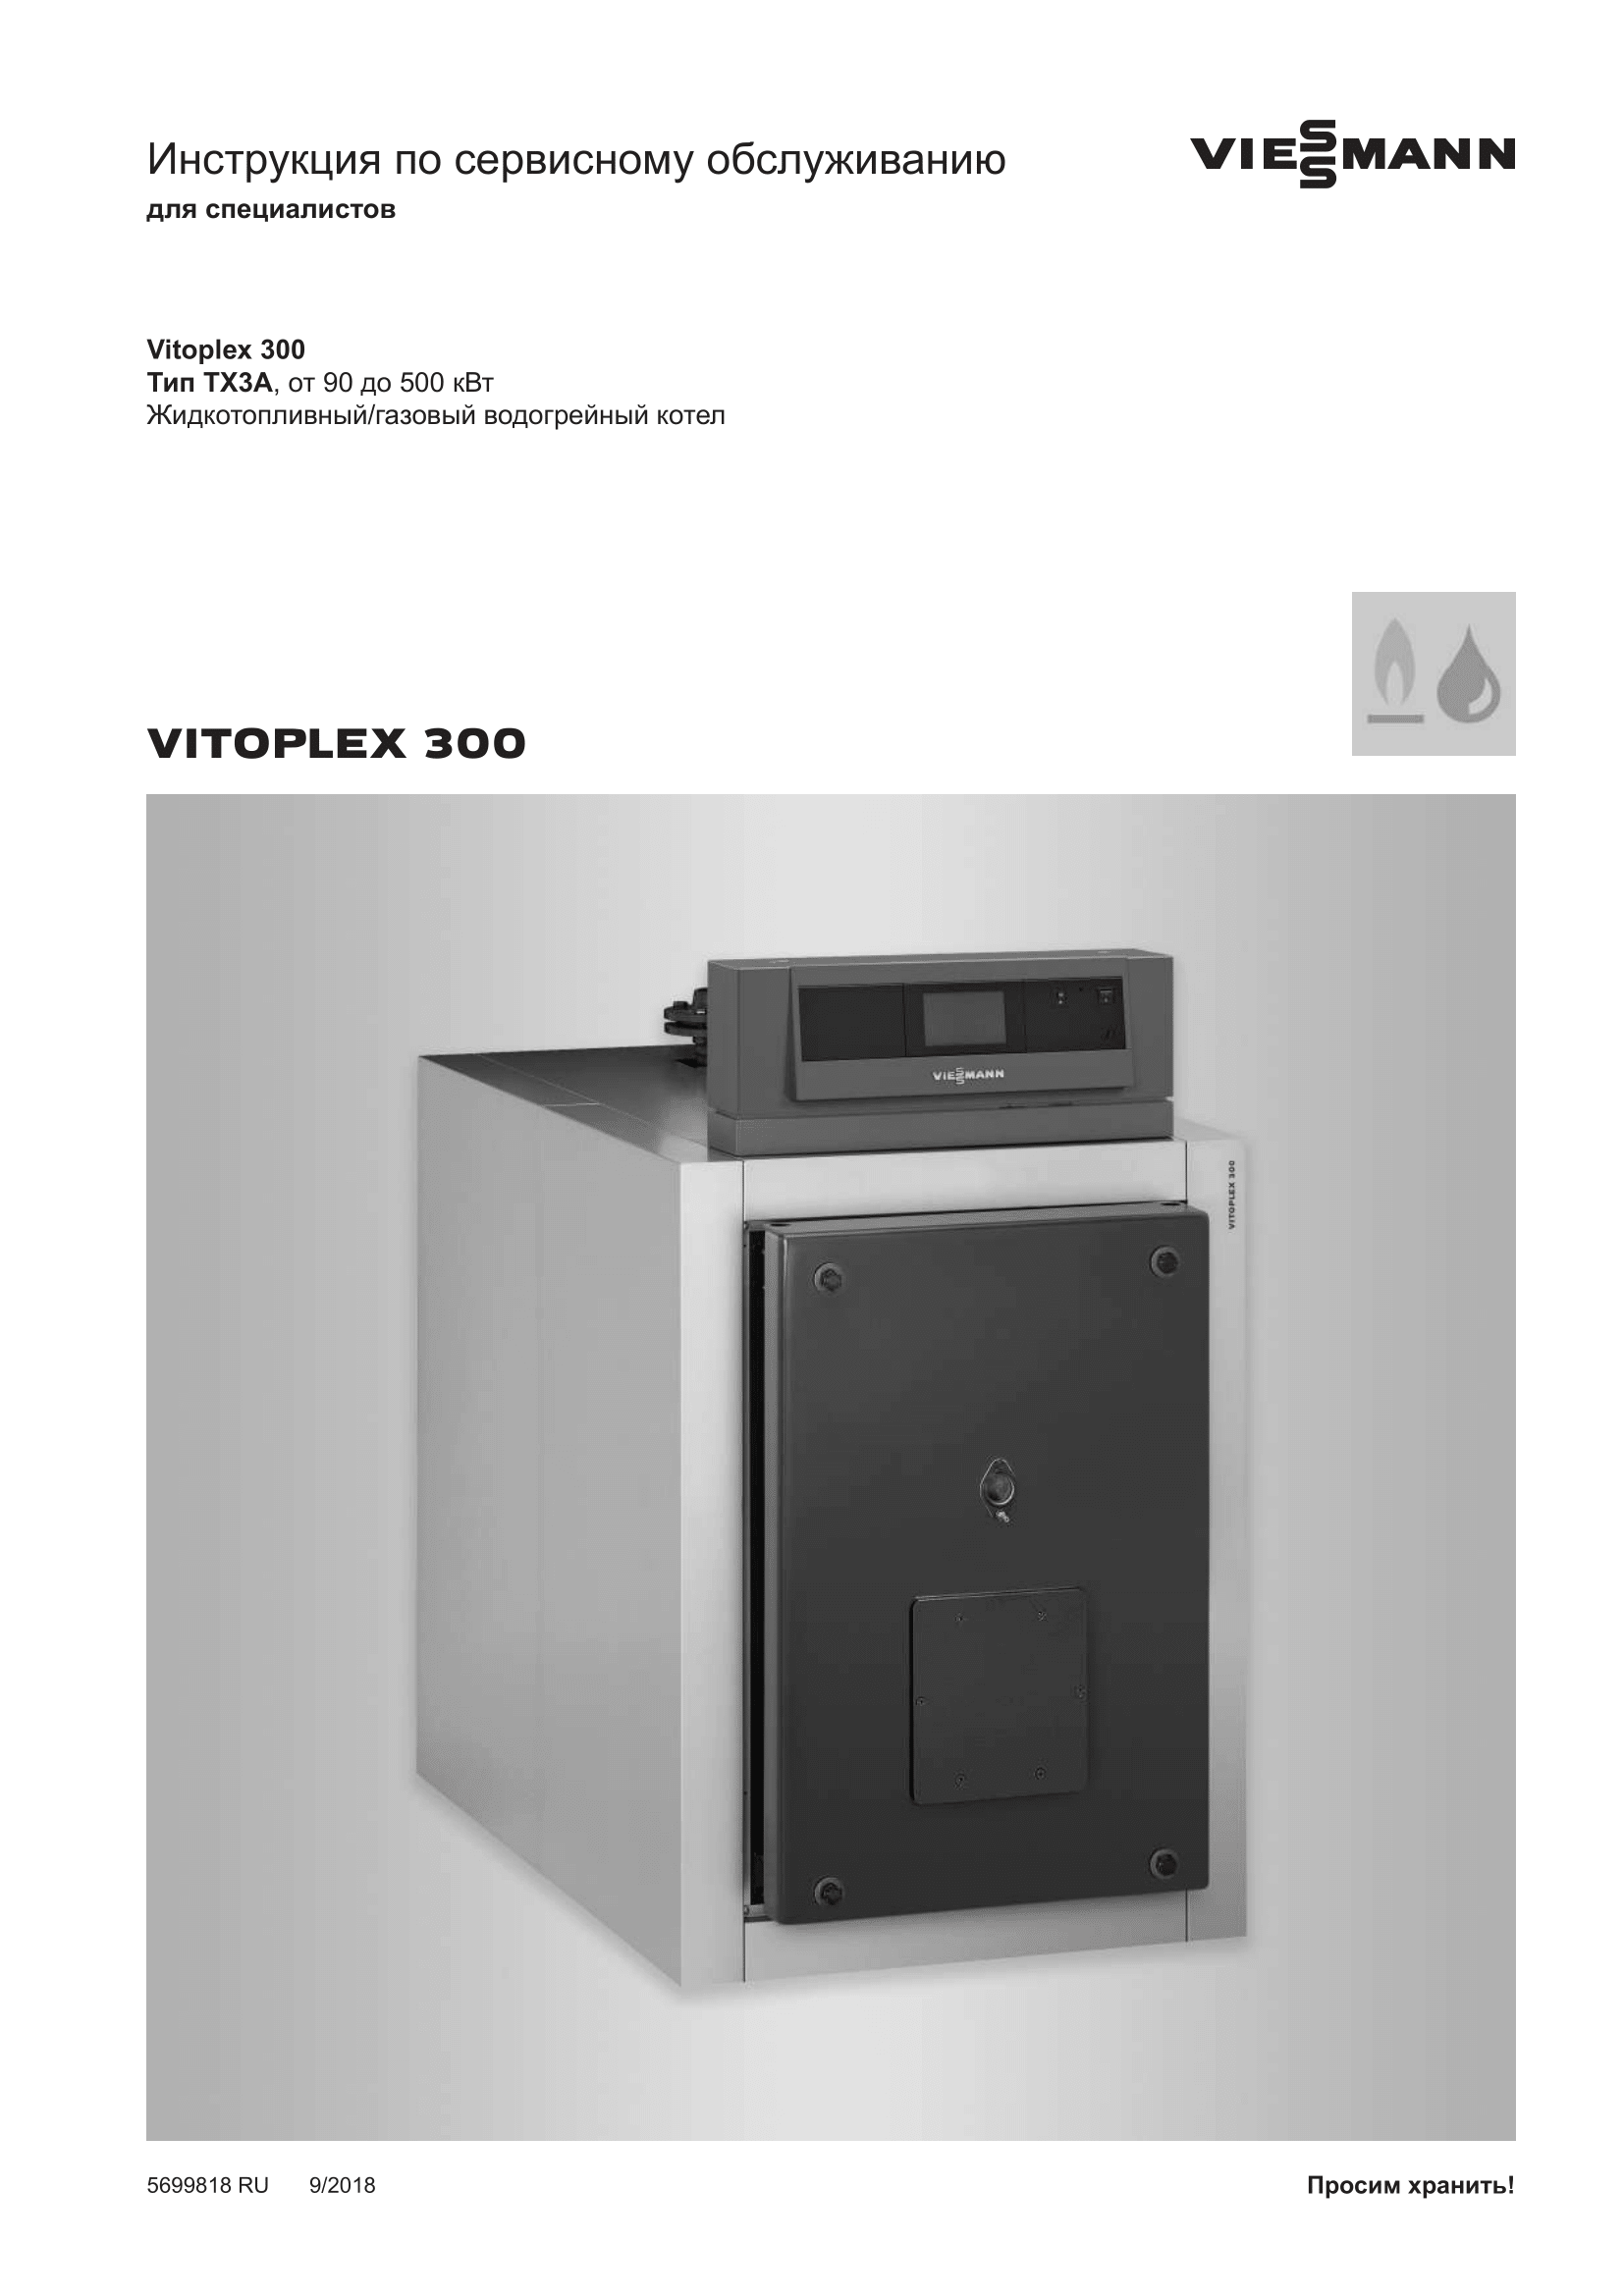 Фотография Инструкция по сервисному обслуживанию для комбинированного котла (дизель/газ) Vitoplex 300 мощностью от 90 до 500 кВт